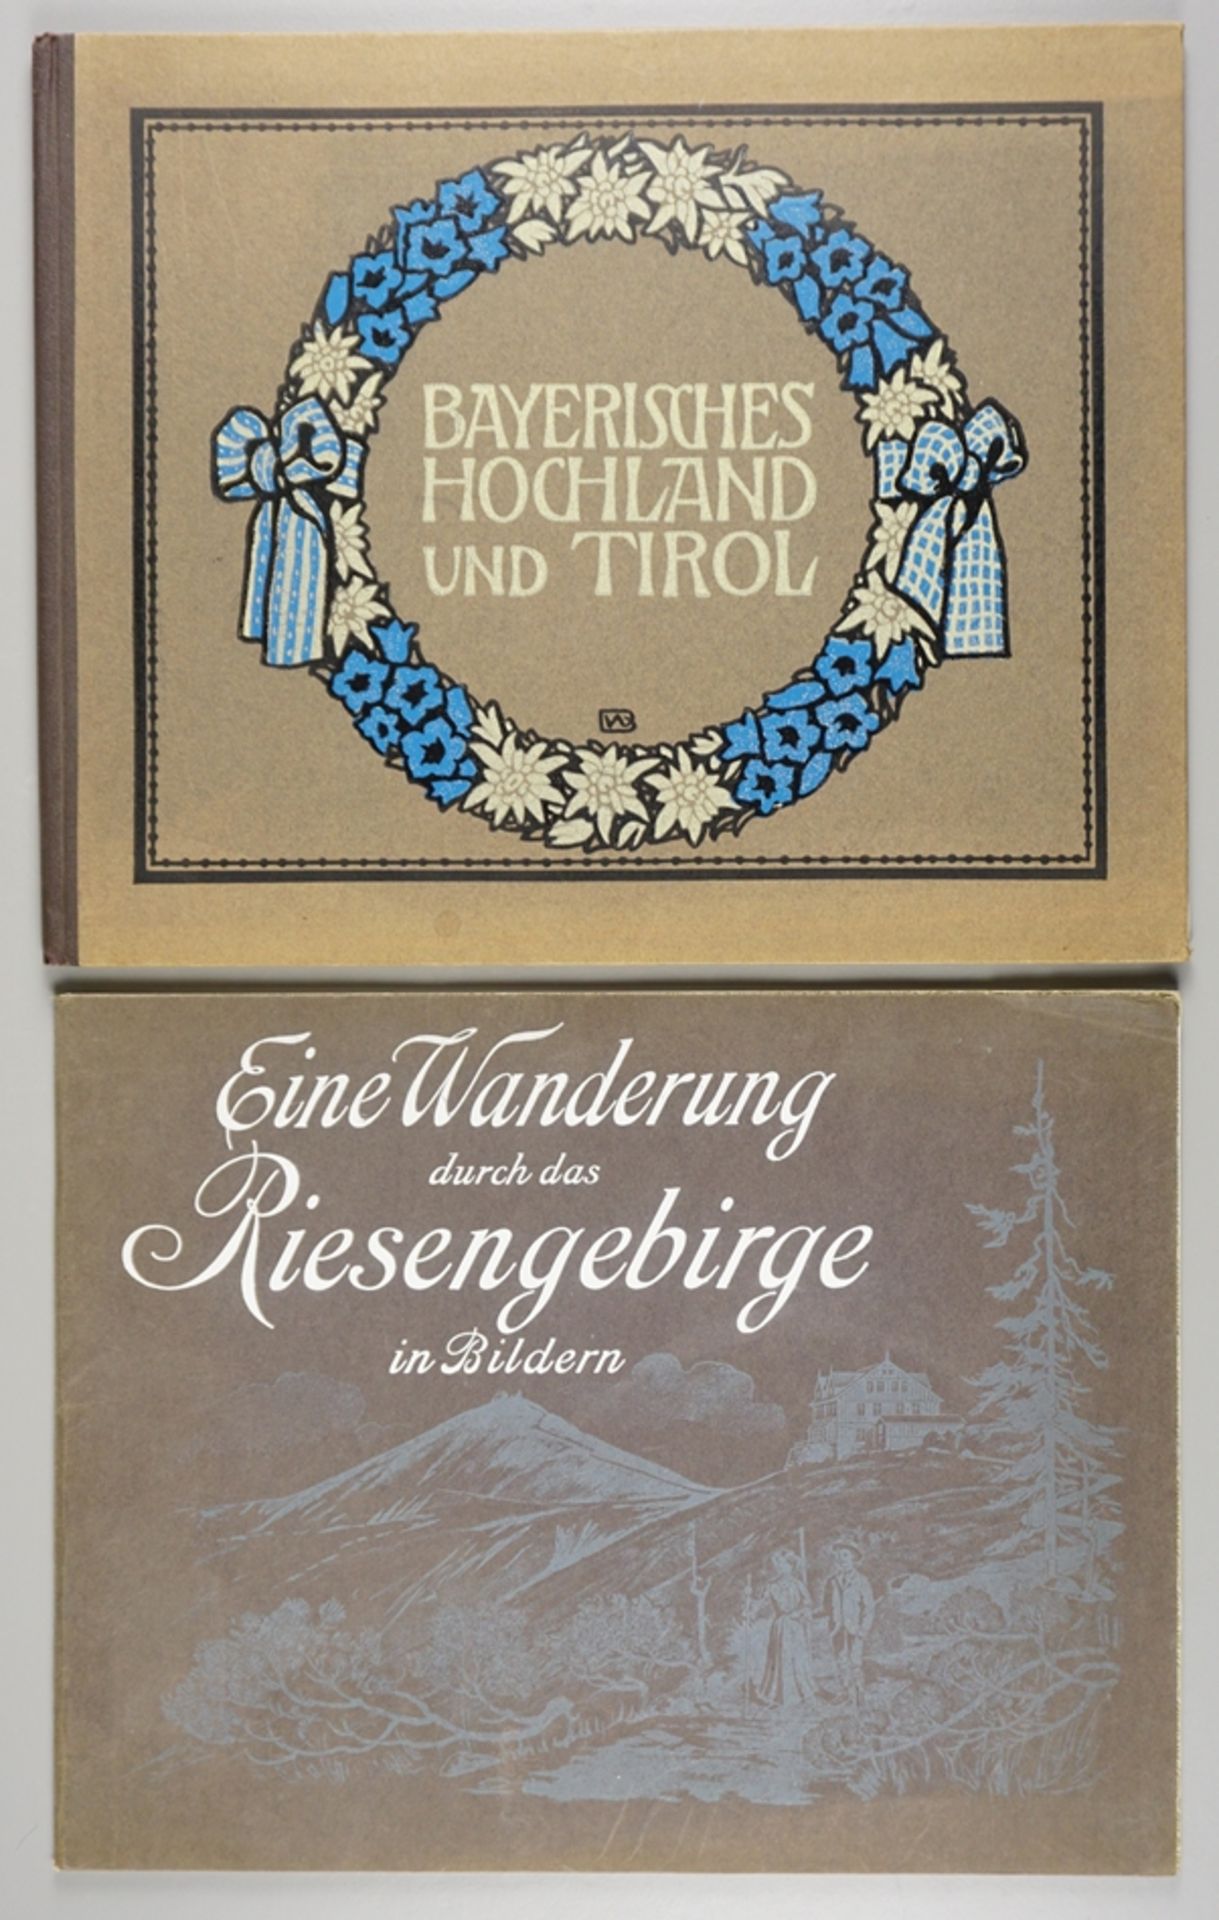 2 Bildbände, Riesengebirge und Bayerisches Hochland, um 1910/1920